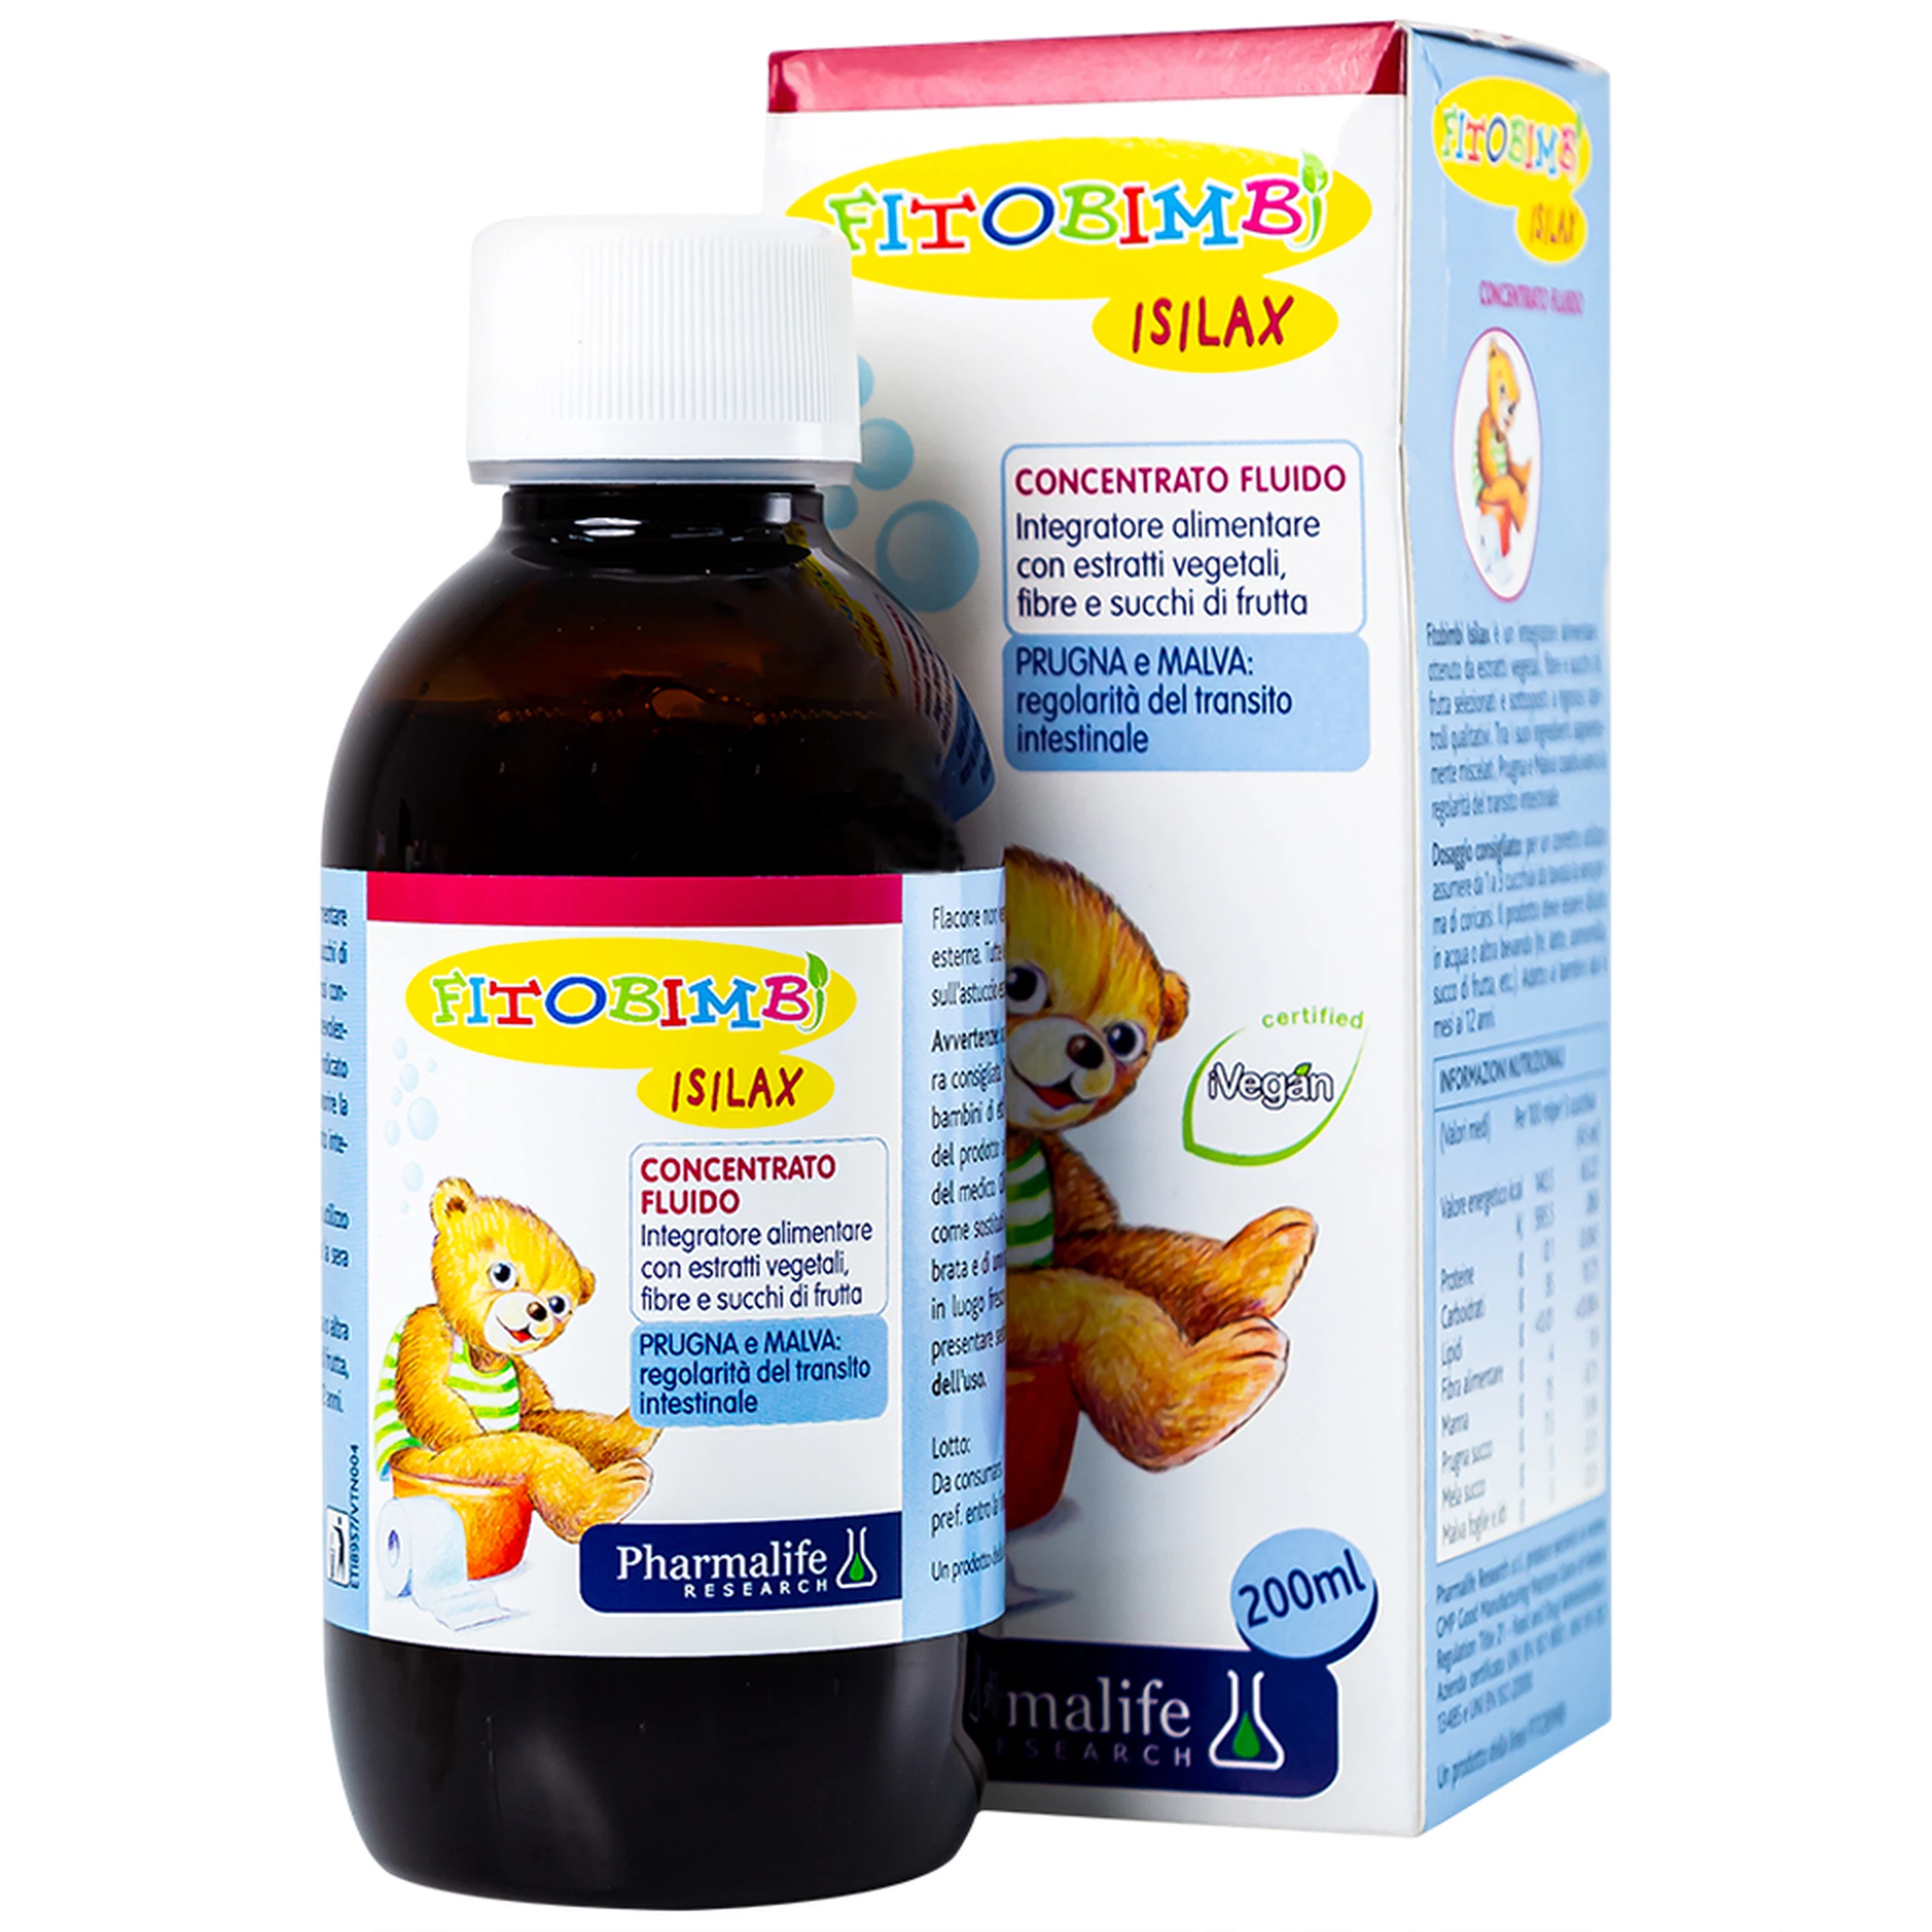 Siro Fitobimbi Isilax Concentrato Fluido Pharmalife nhận tràng, hỗ trợ giảm táo bón cho trẻ (200ml)